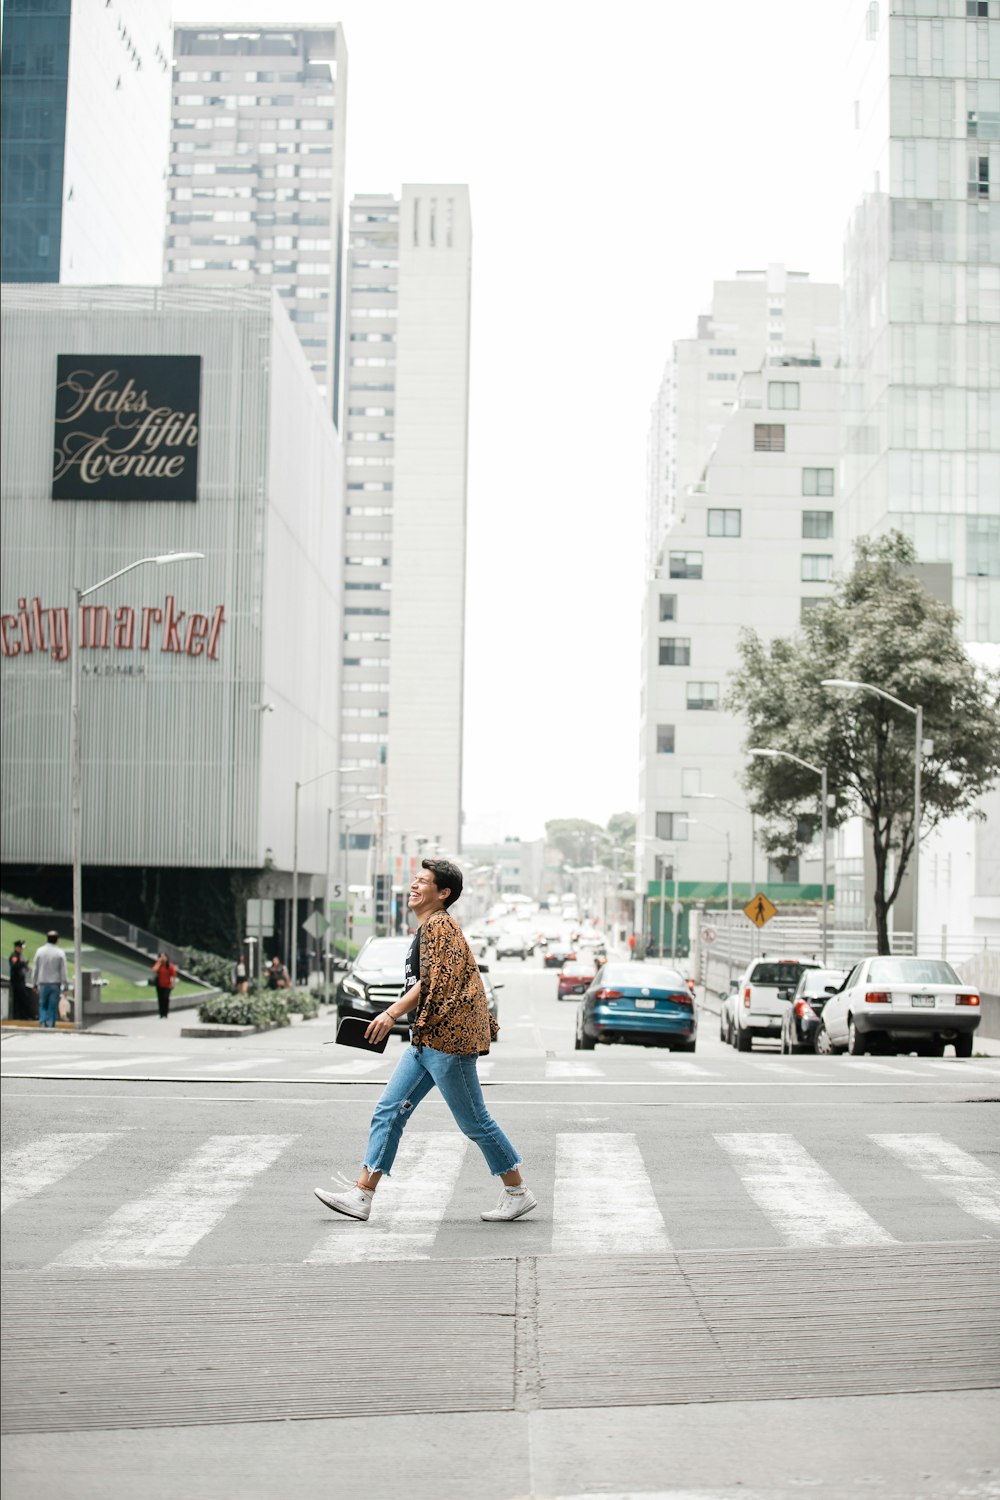 man in brown jacket walking on pedestrian lane